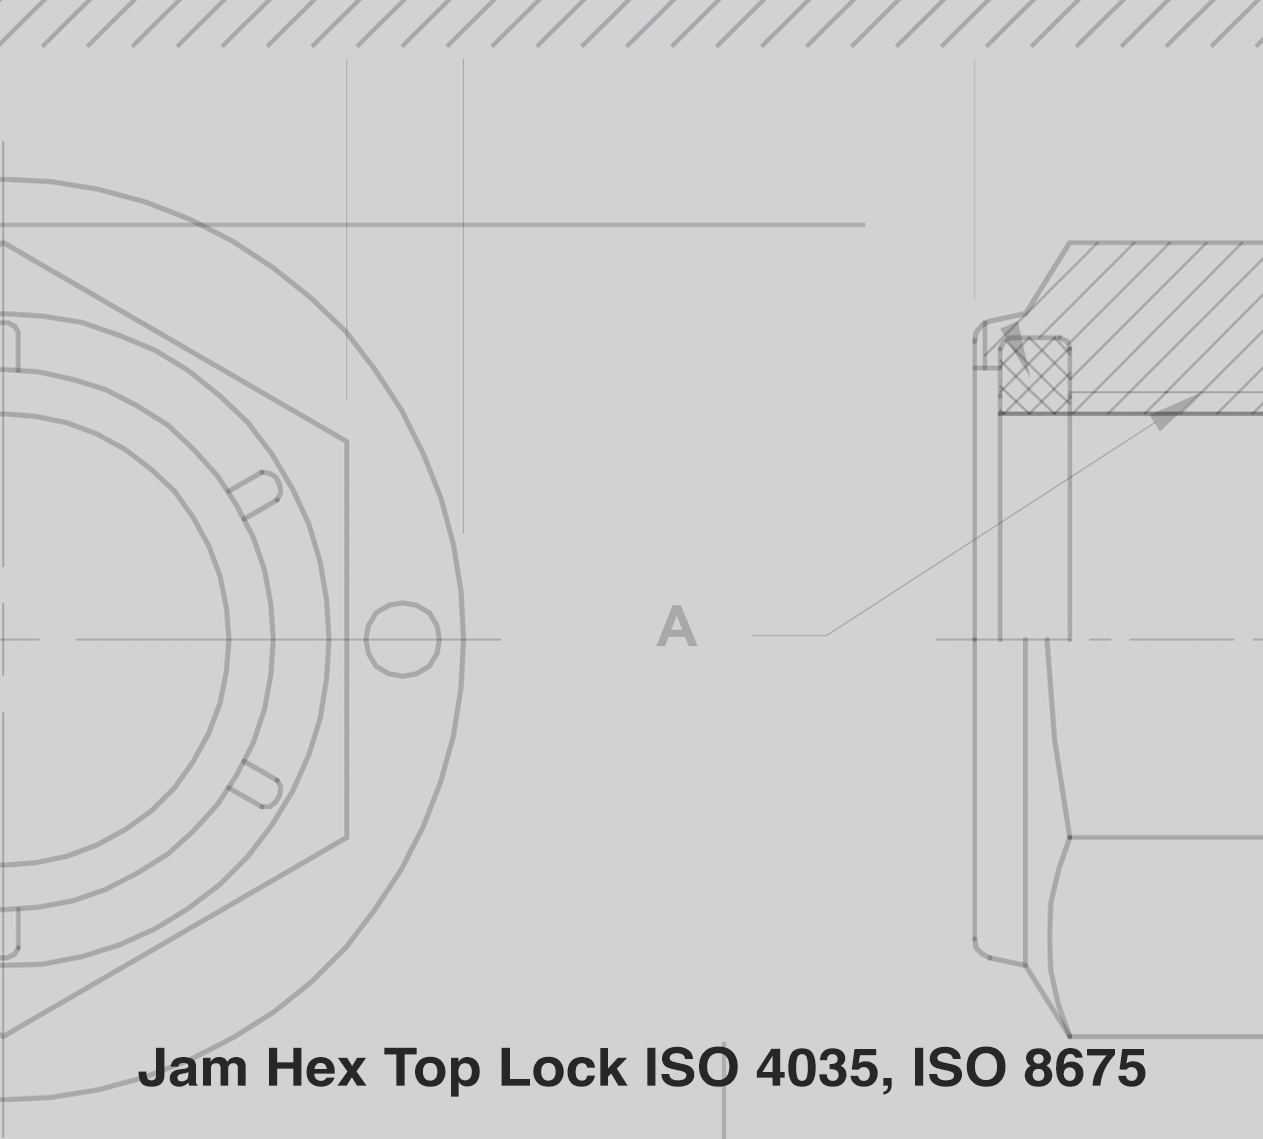 Jam Hex Top Lock ISO 4035, ISO 8675